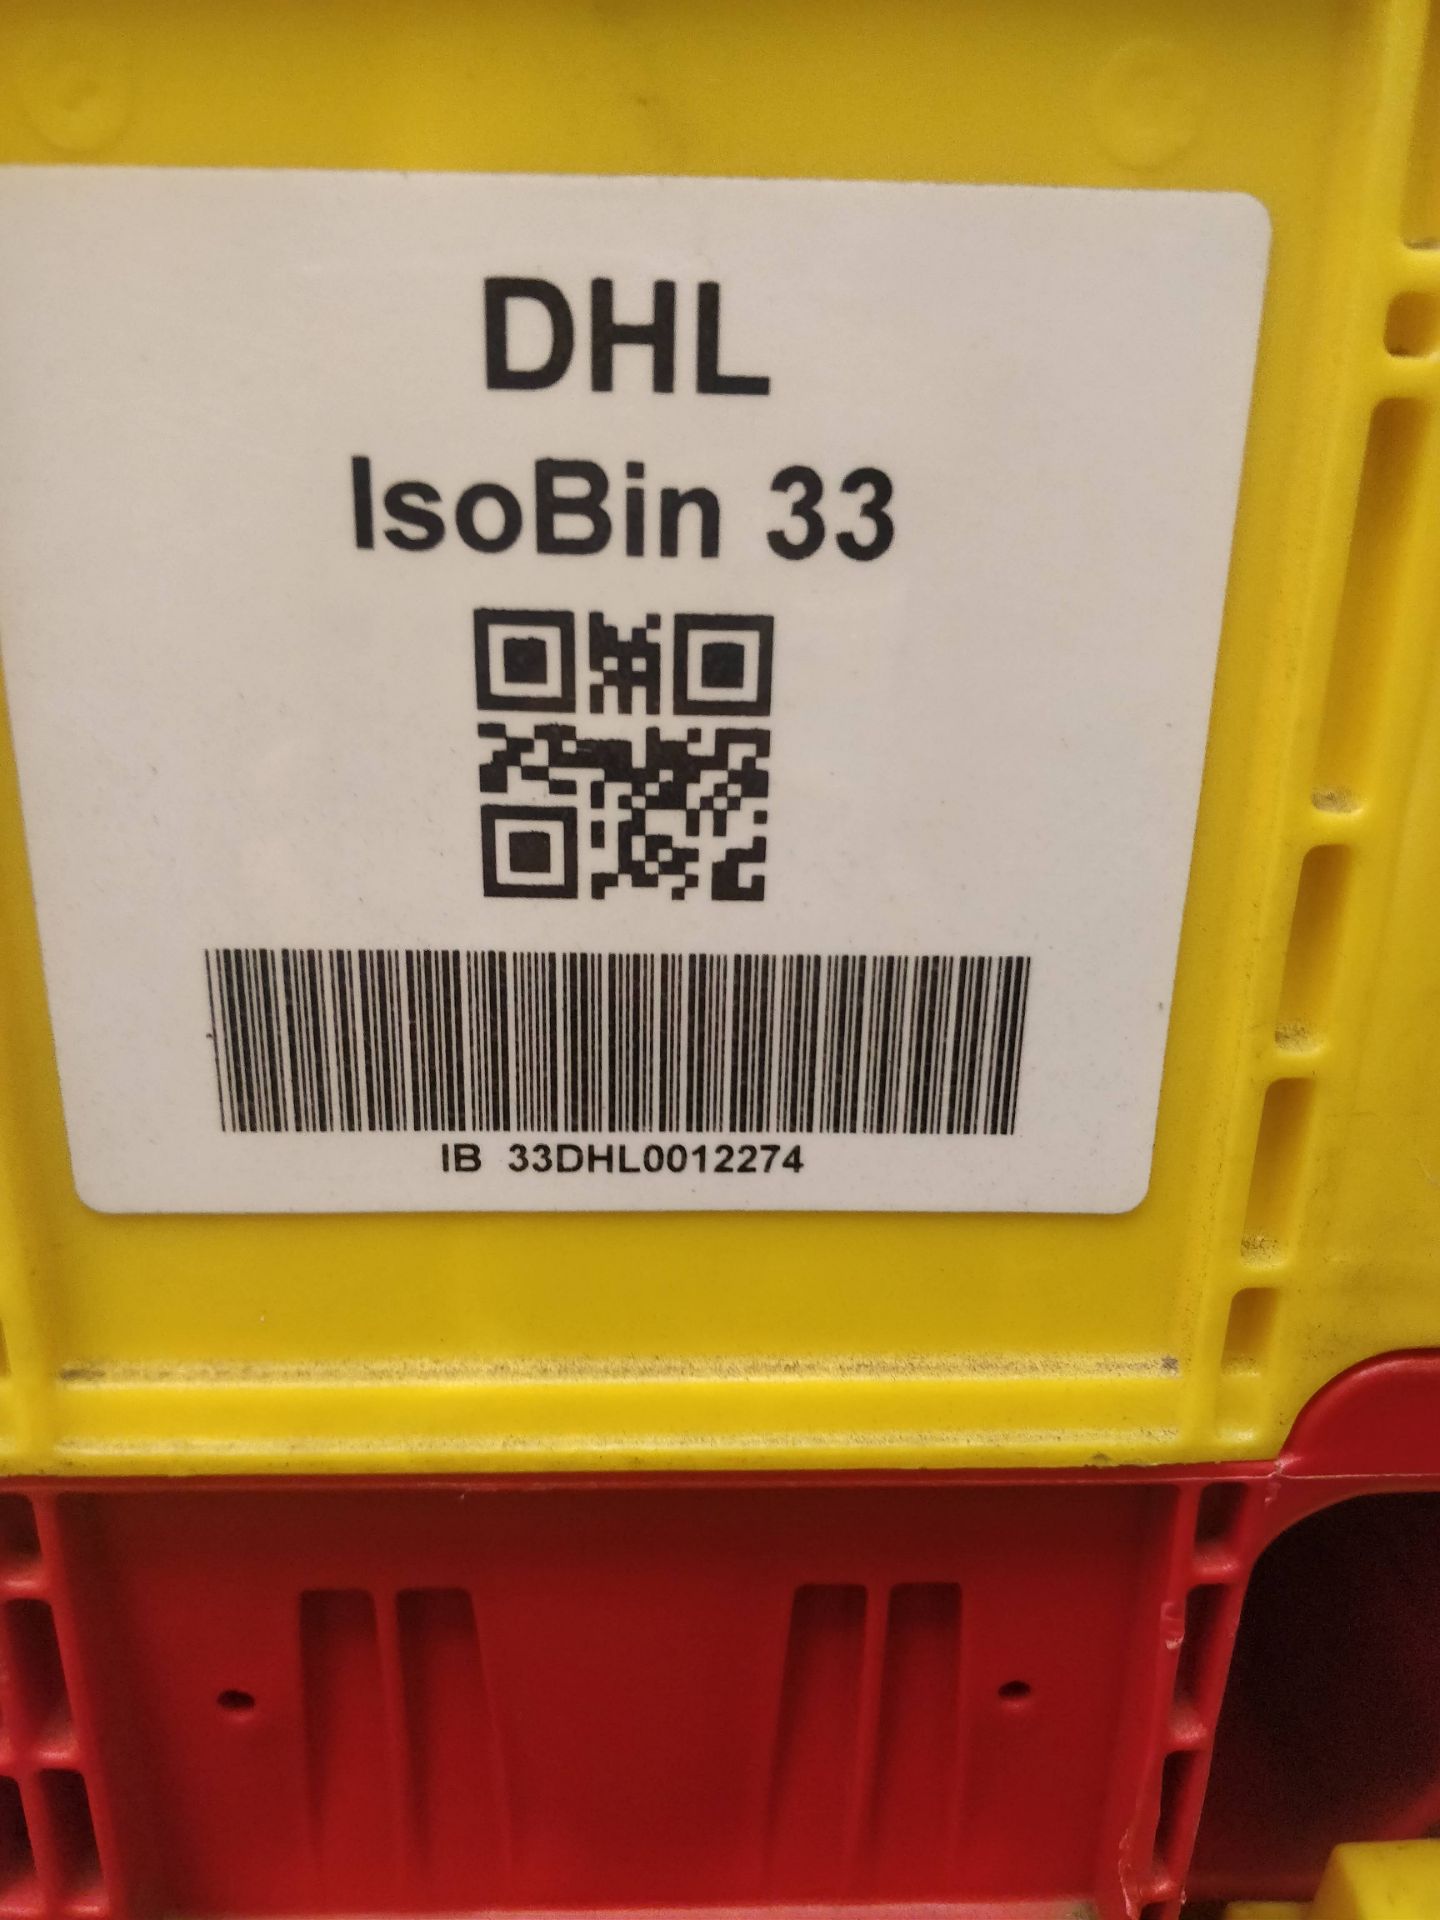 x16 DHL IsoBin 33 - Image 4 of 5